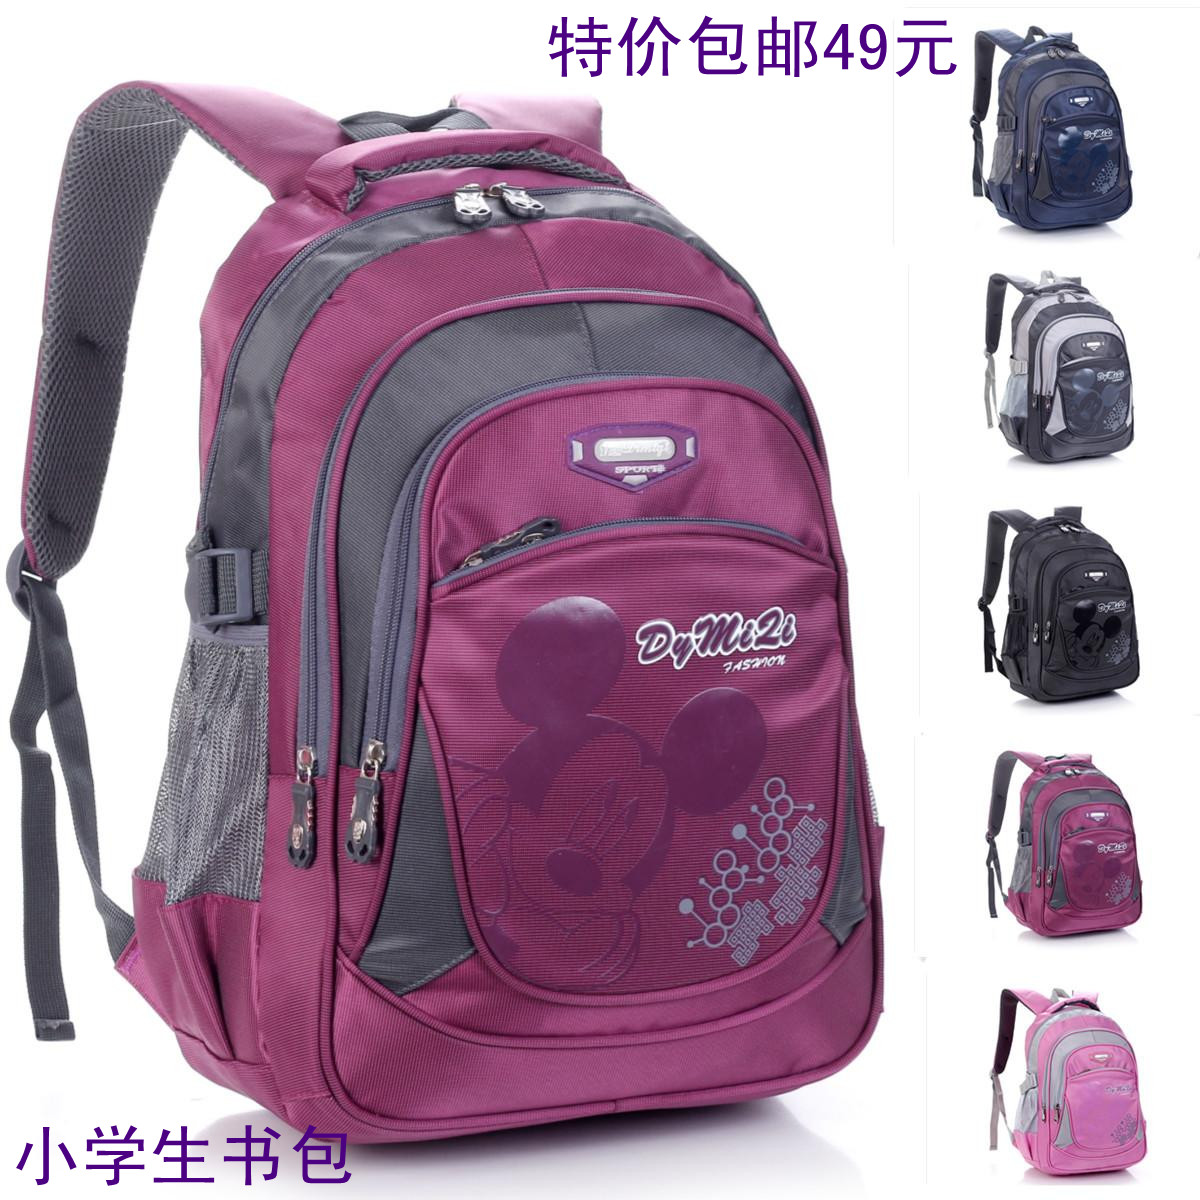 Double-shoulder school bag in primary school students school bag girls ...